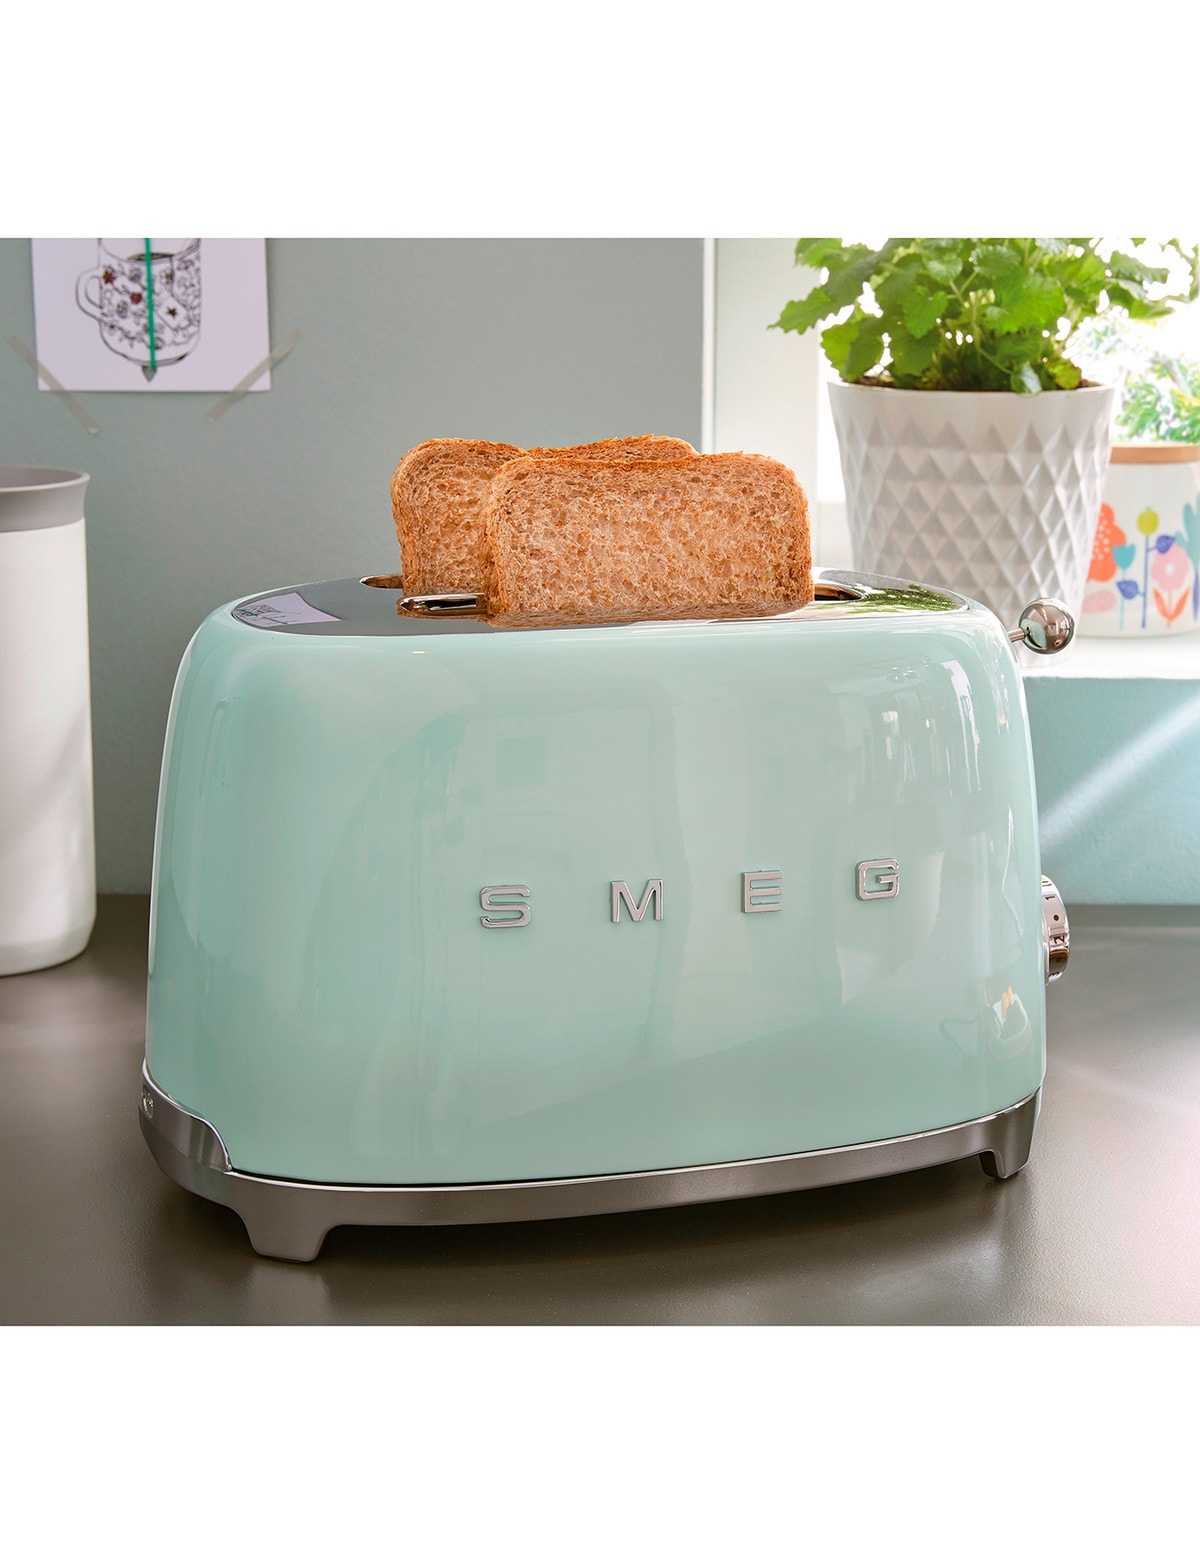 Smeg - 2-slot toaster long tsf02